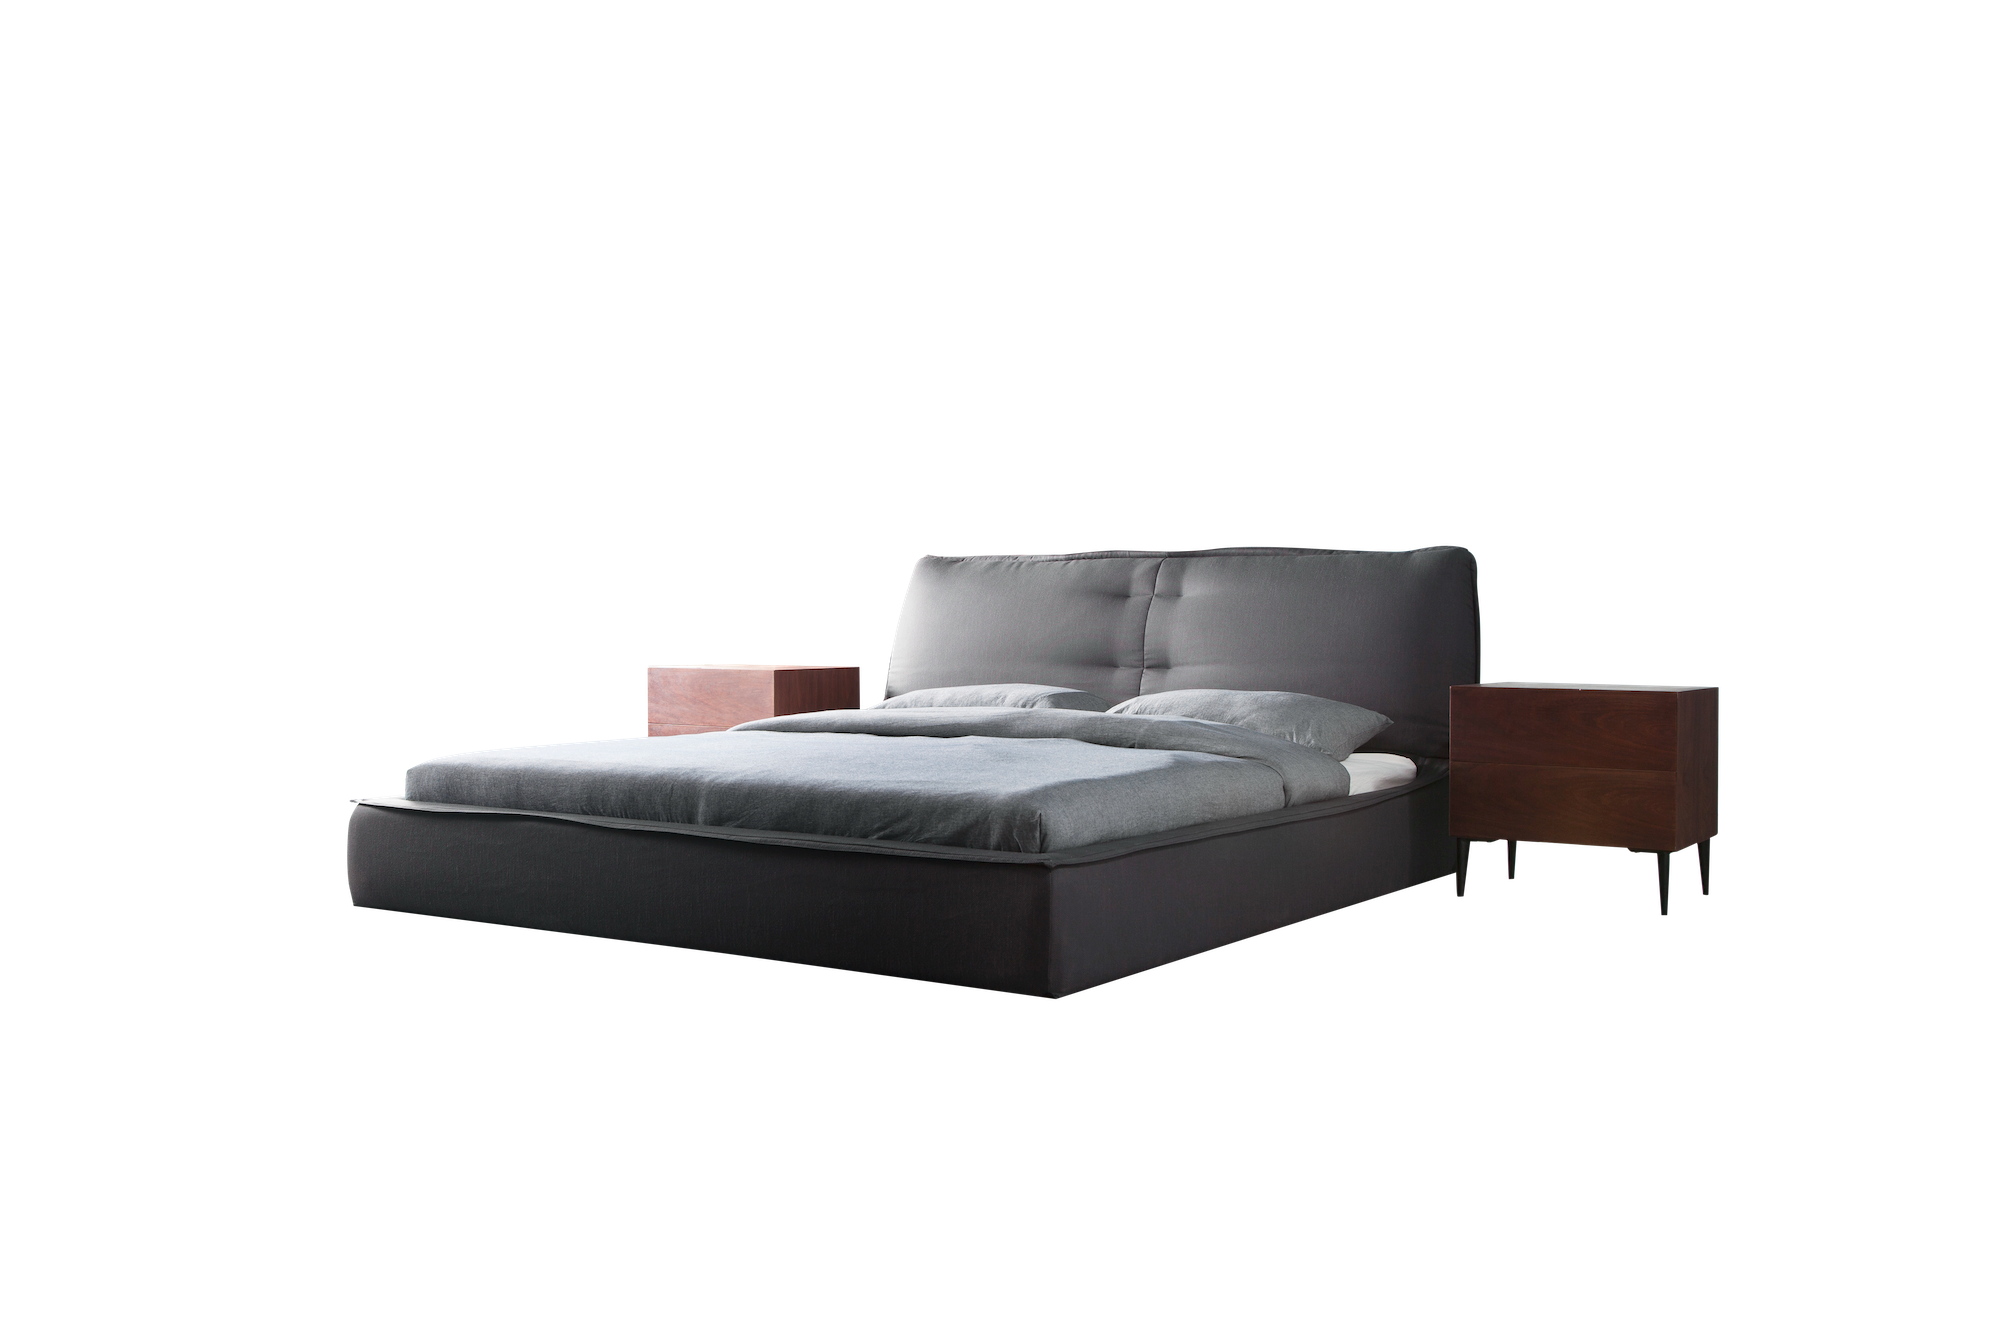 Black bed frame grey sheets bed side table